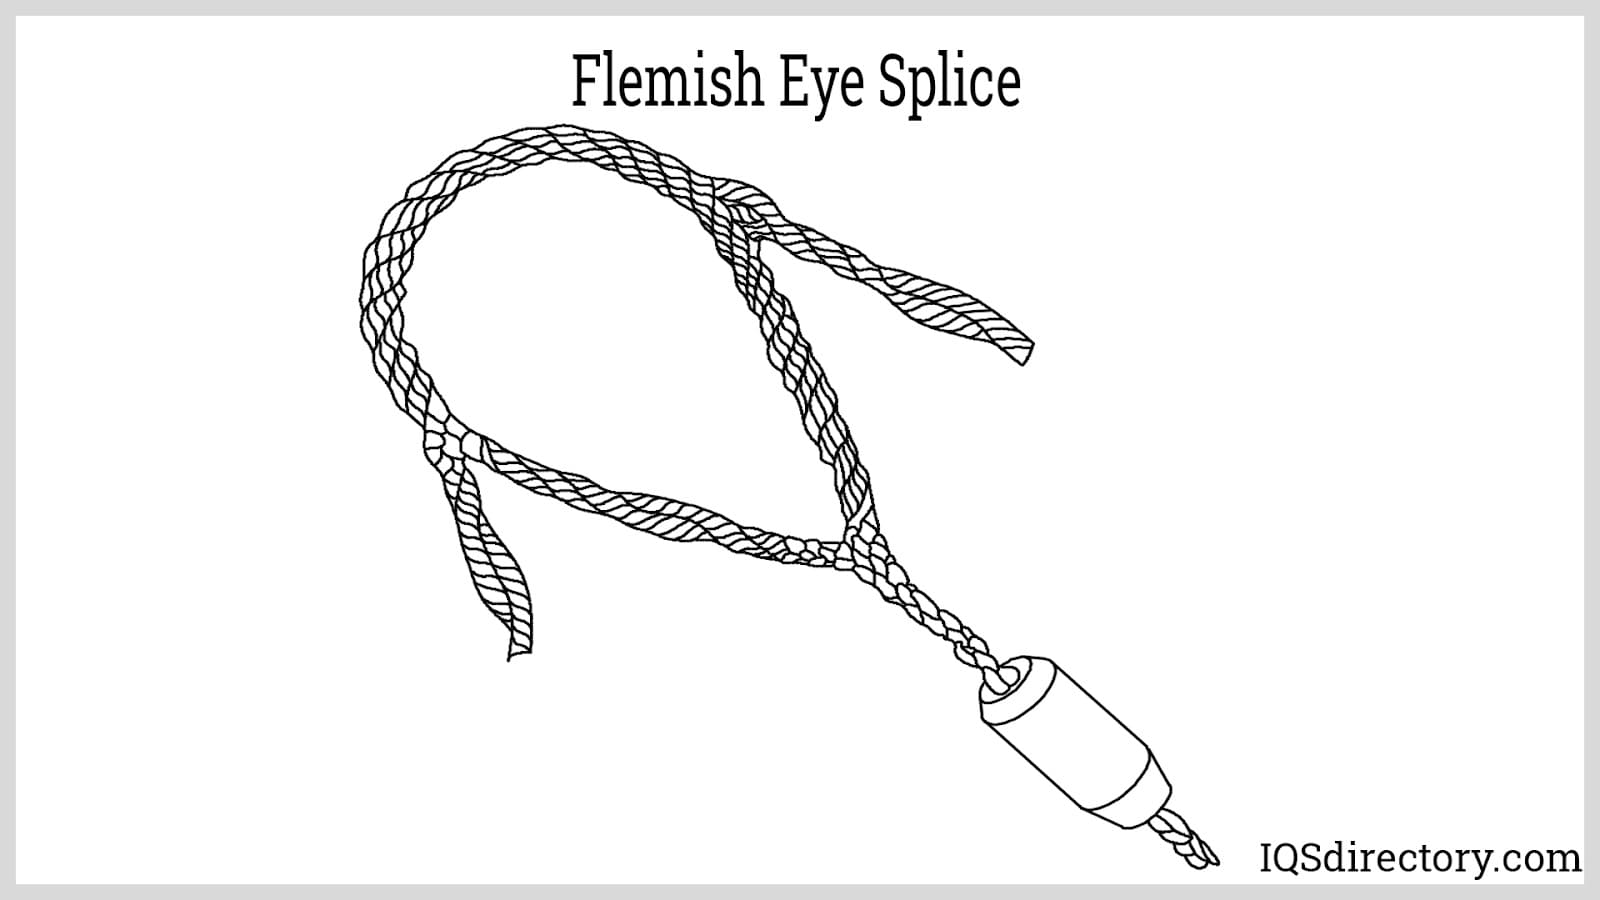 Flemish Eye Splice